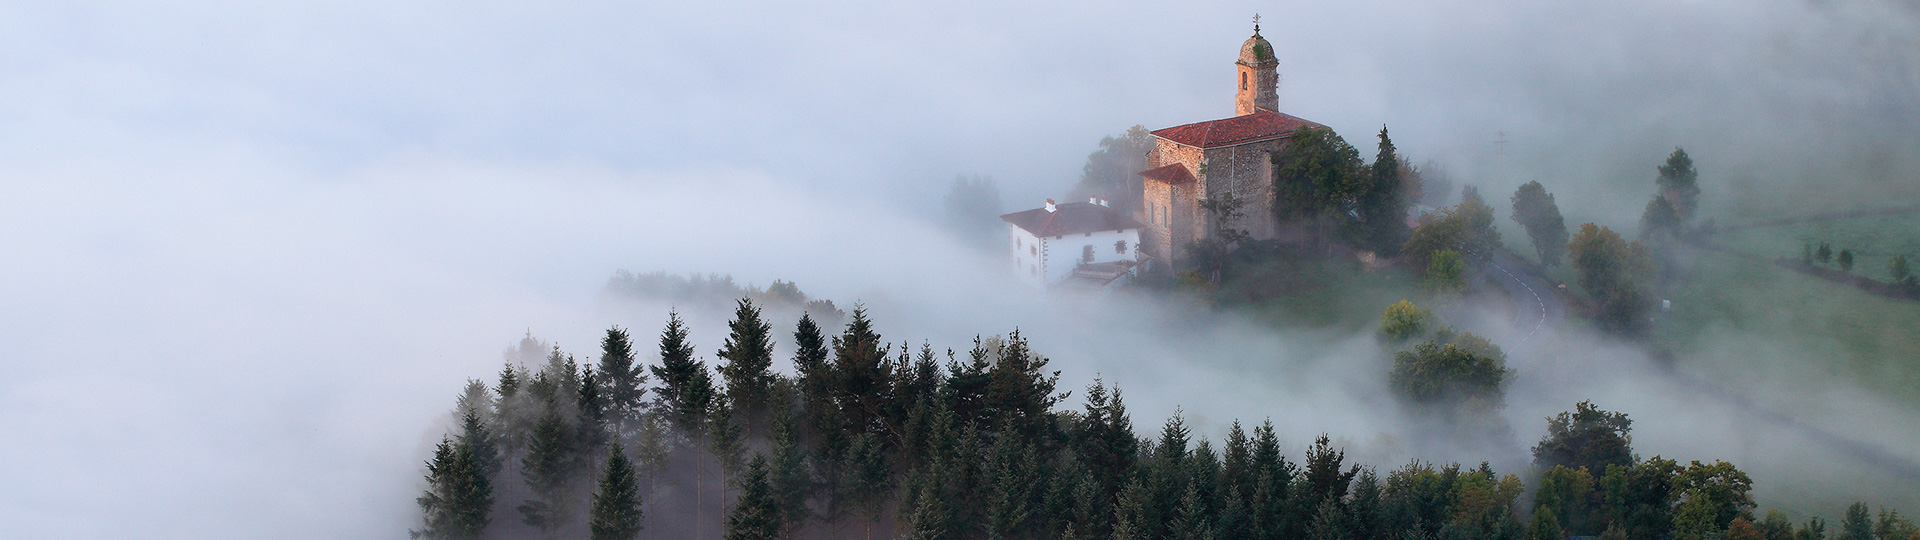 バスク地方アラマヨナ渓谷の夜明けの霧